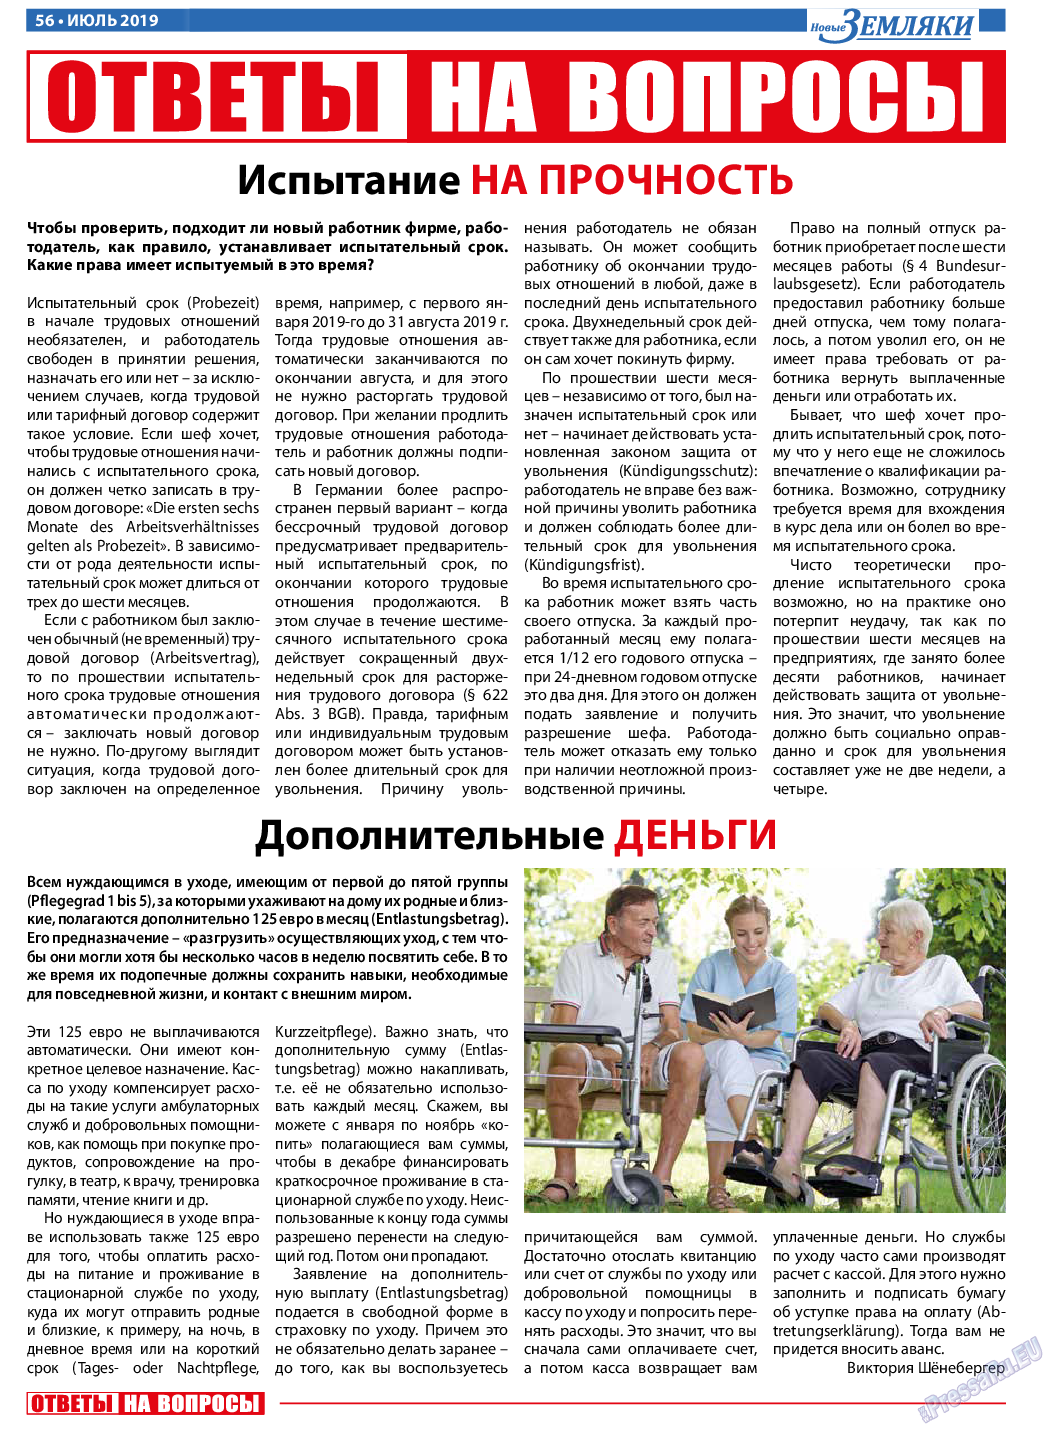 Новые Земляки, газета. 2019 №7 стр.56